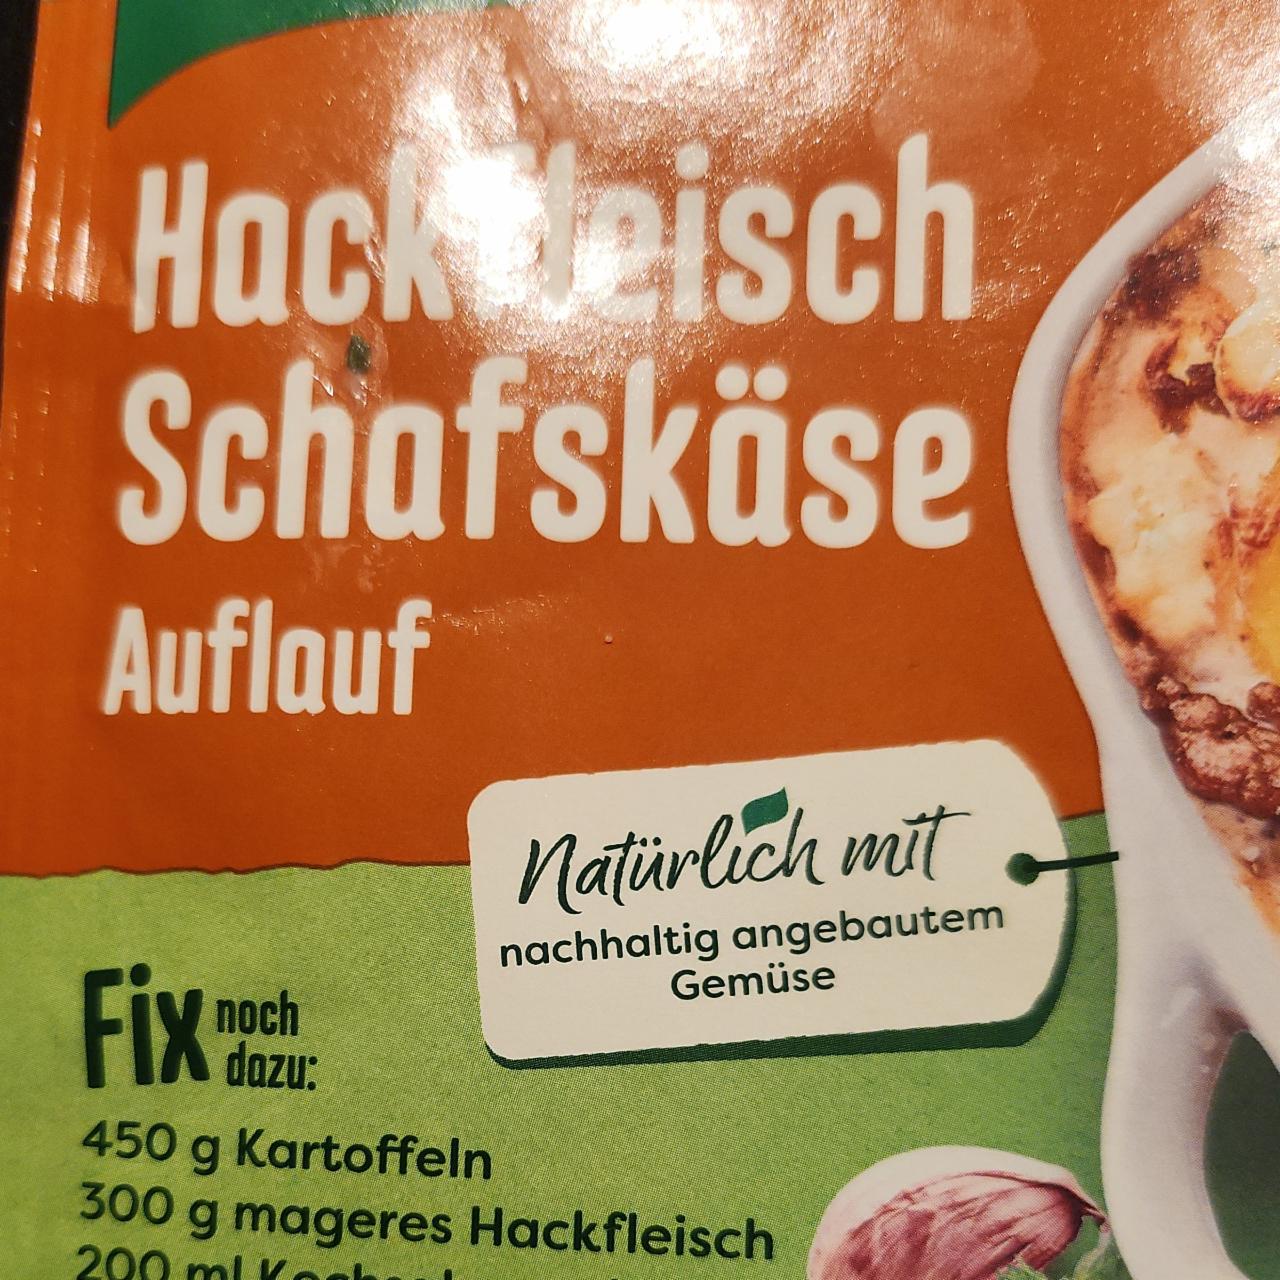 Zdjęcia - Hackfleisch Schafskase Auflauf Knorr